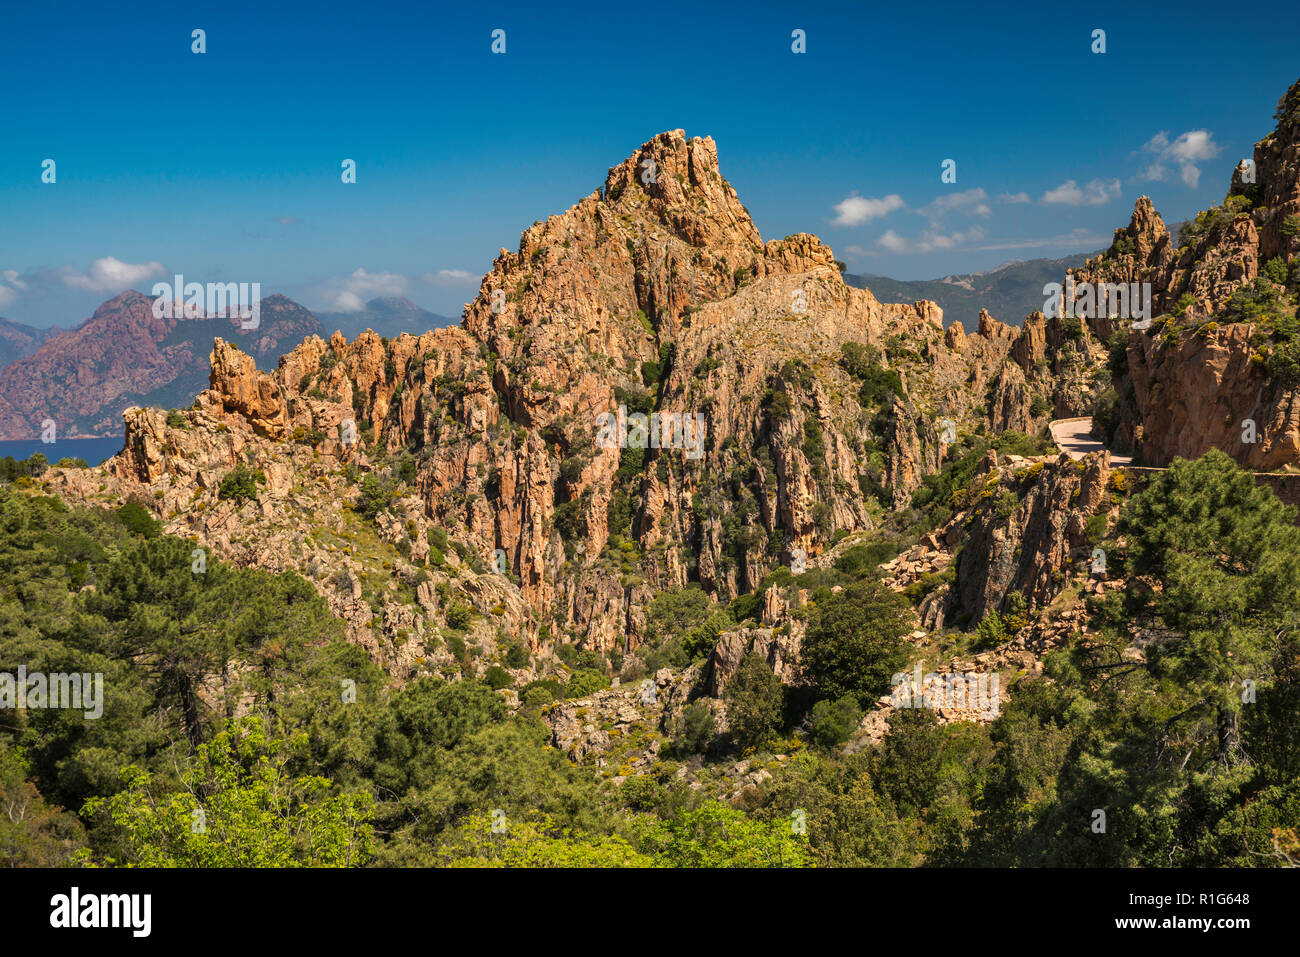 Taffoni rocks, orange porphyritic granite rocks, Les Calanche de Piana, UNESCO World Heritage Site, near town of Piana, Corse-du-Sud, Corsica, France Stock Photo